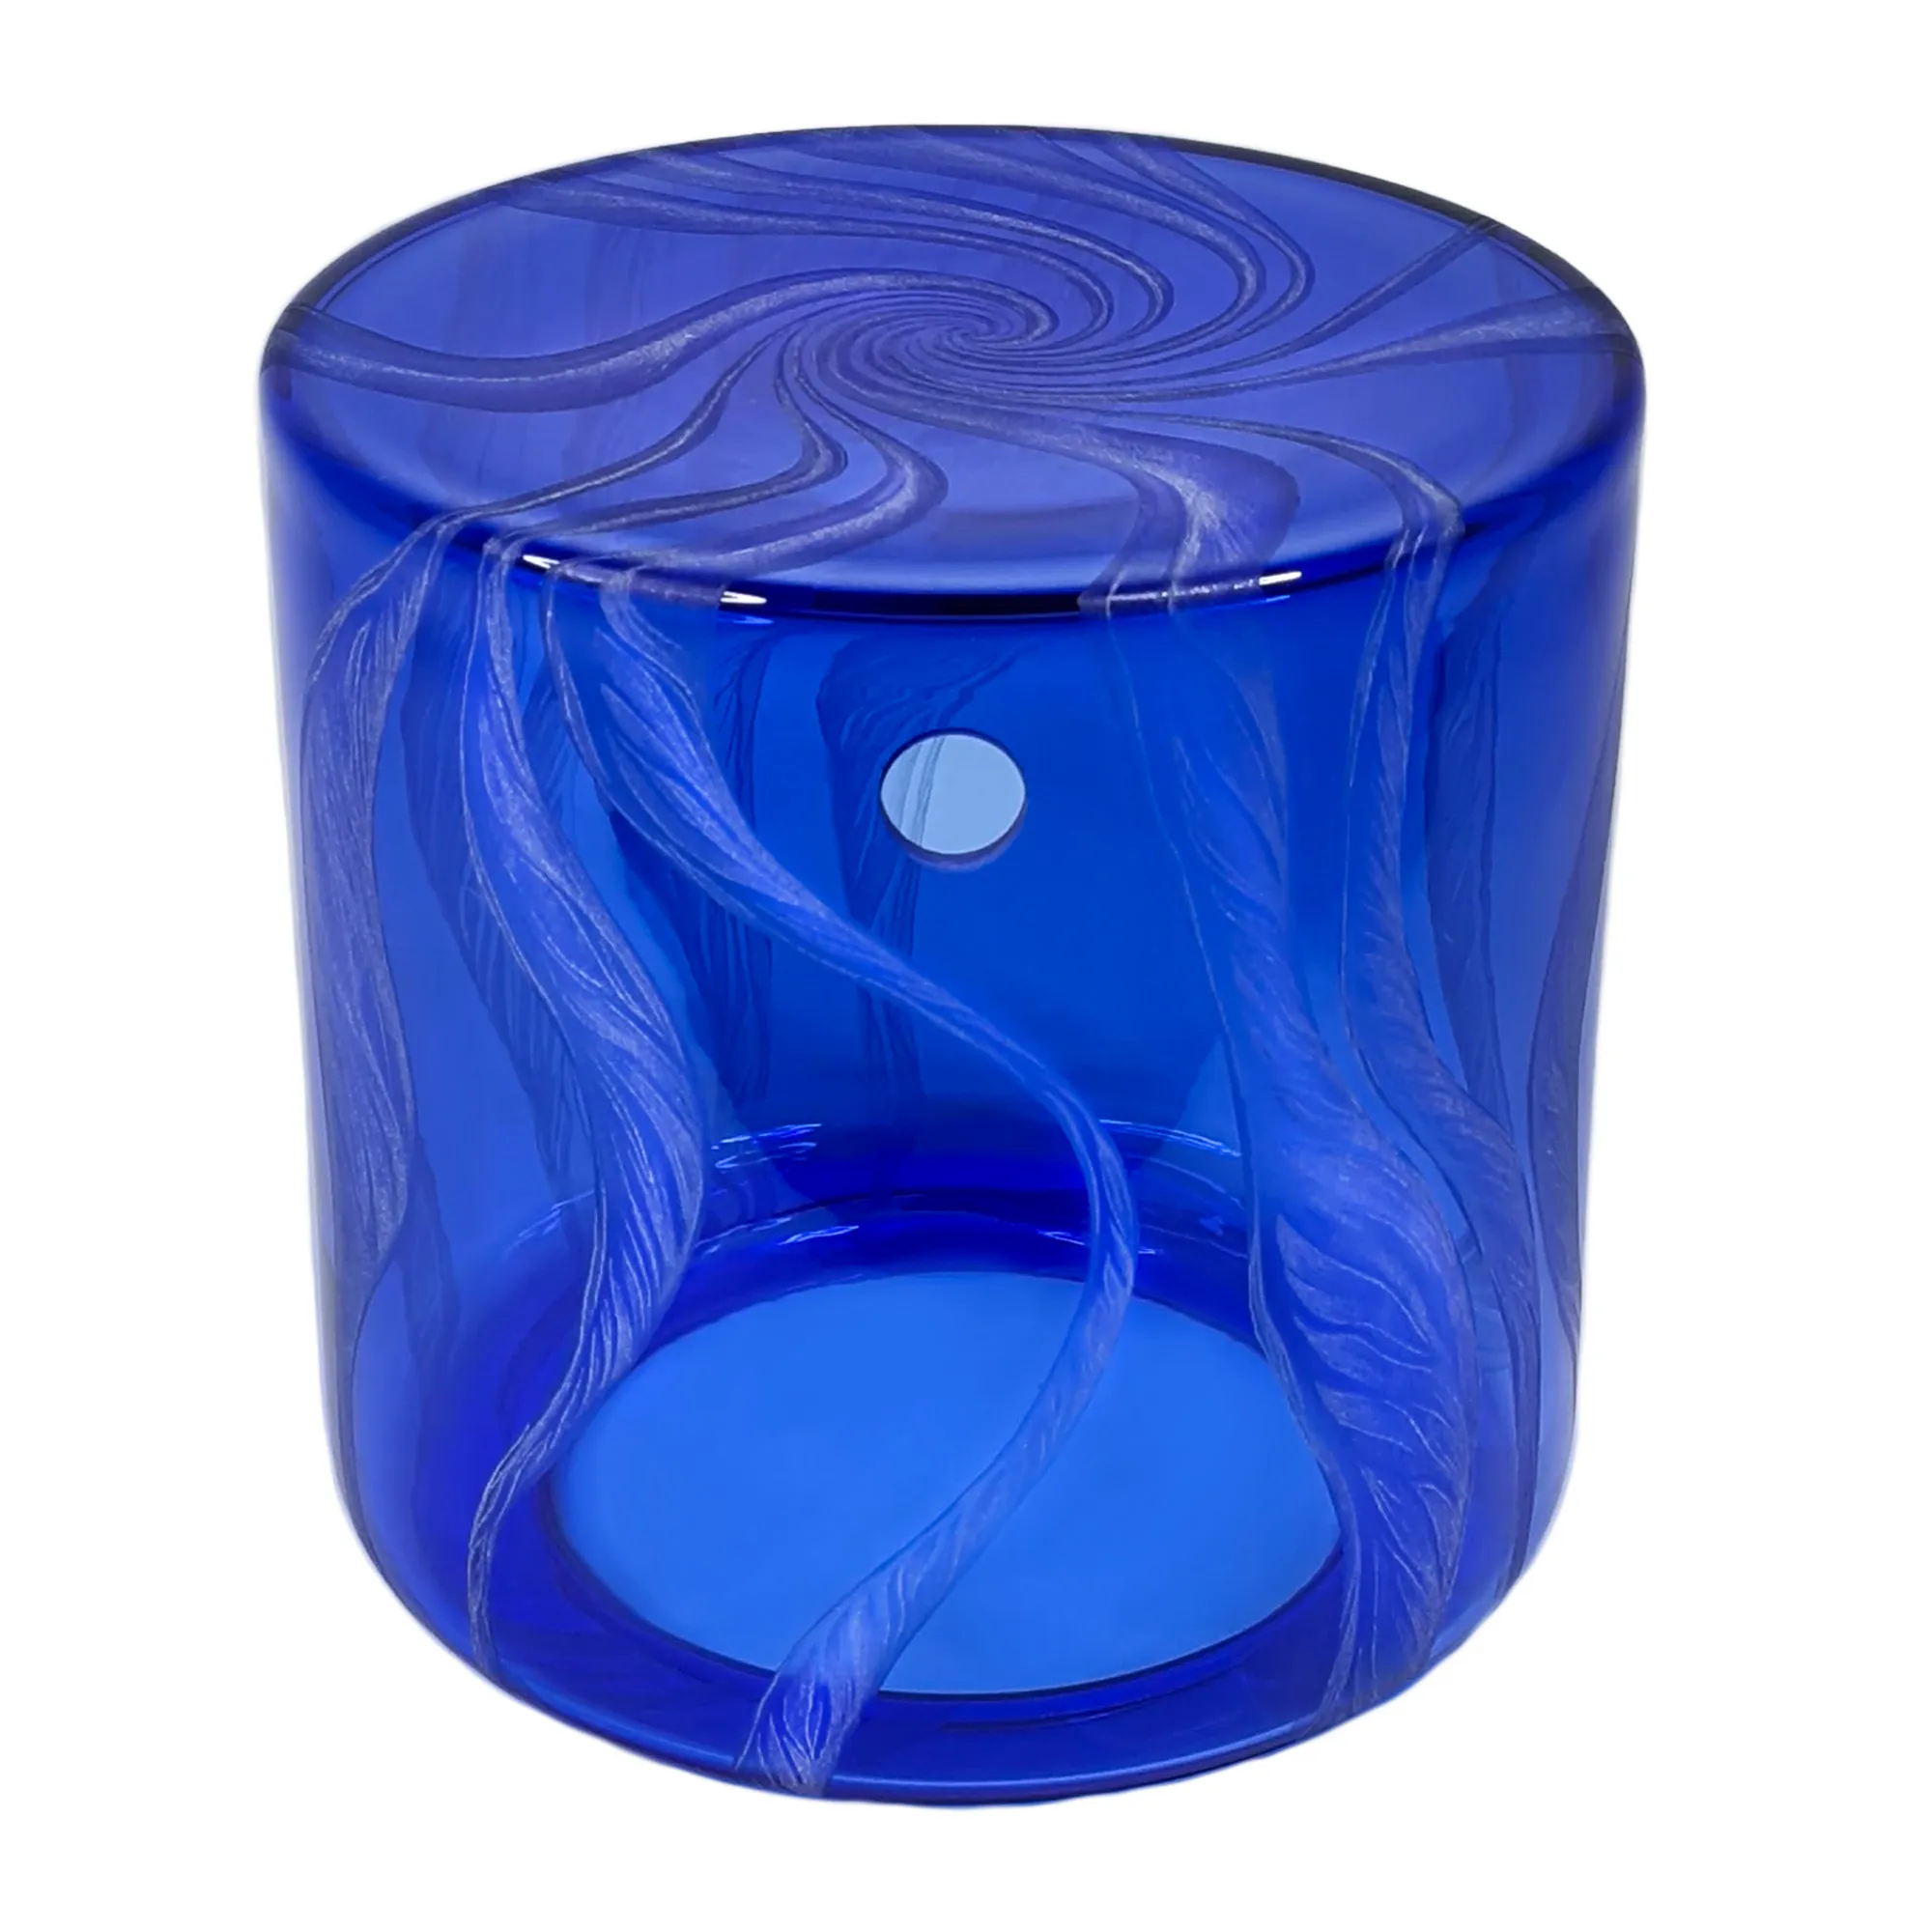 Vorratstank für Wasserfilter Mini mit einer Handgravur. Die Gravur zeigt, auf blauem Glas. Wellen die in welligen Linien gerade am Glas noch oben gehen, die Wellen verteilen sich rund um das runde Glas. Ansicht von vorne.